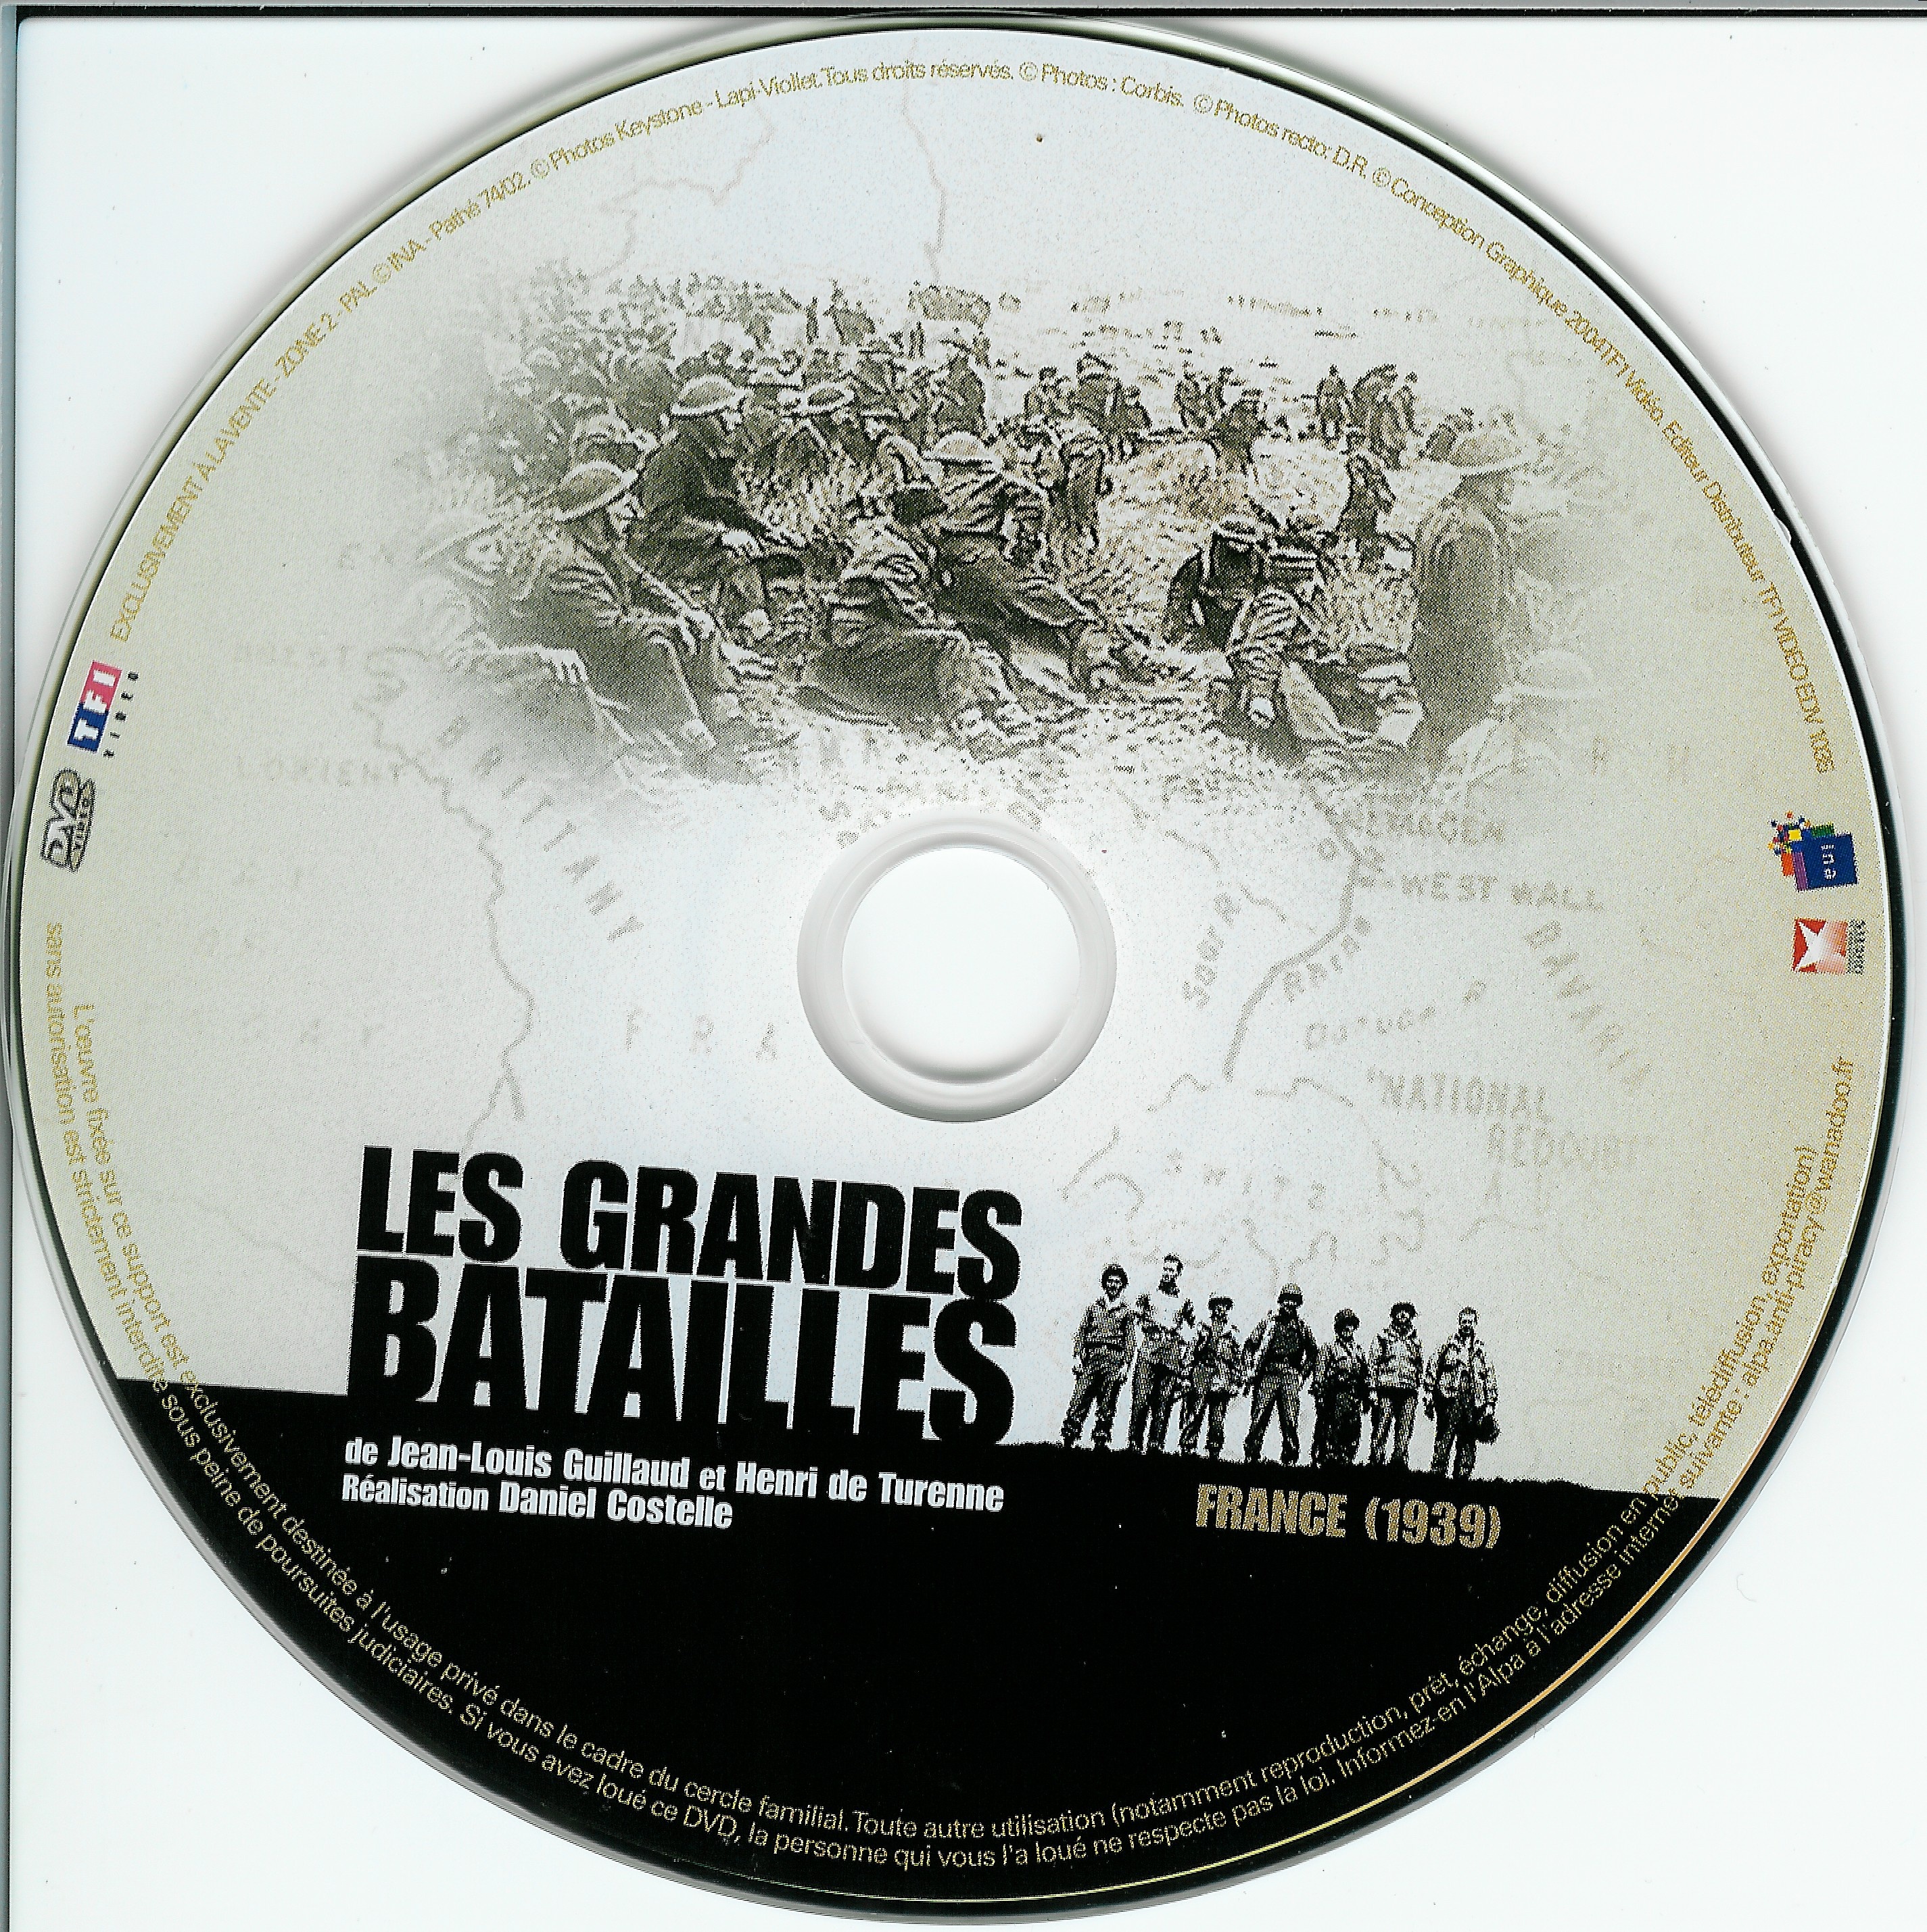 Les grandes batailles - France 1939